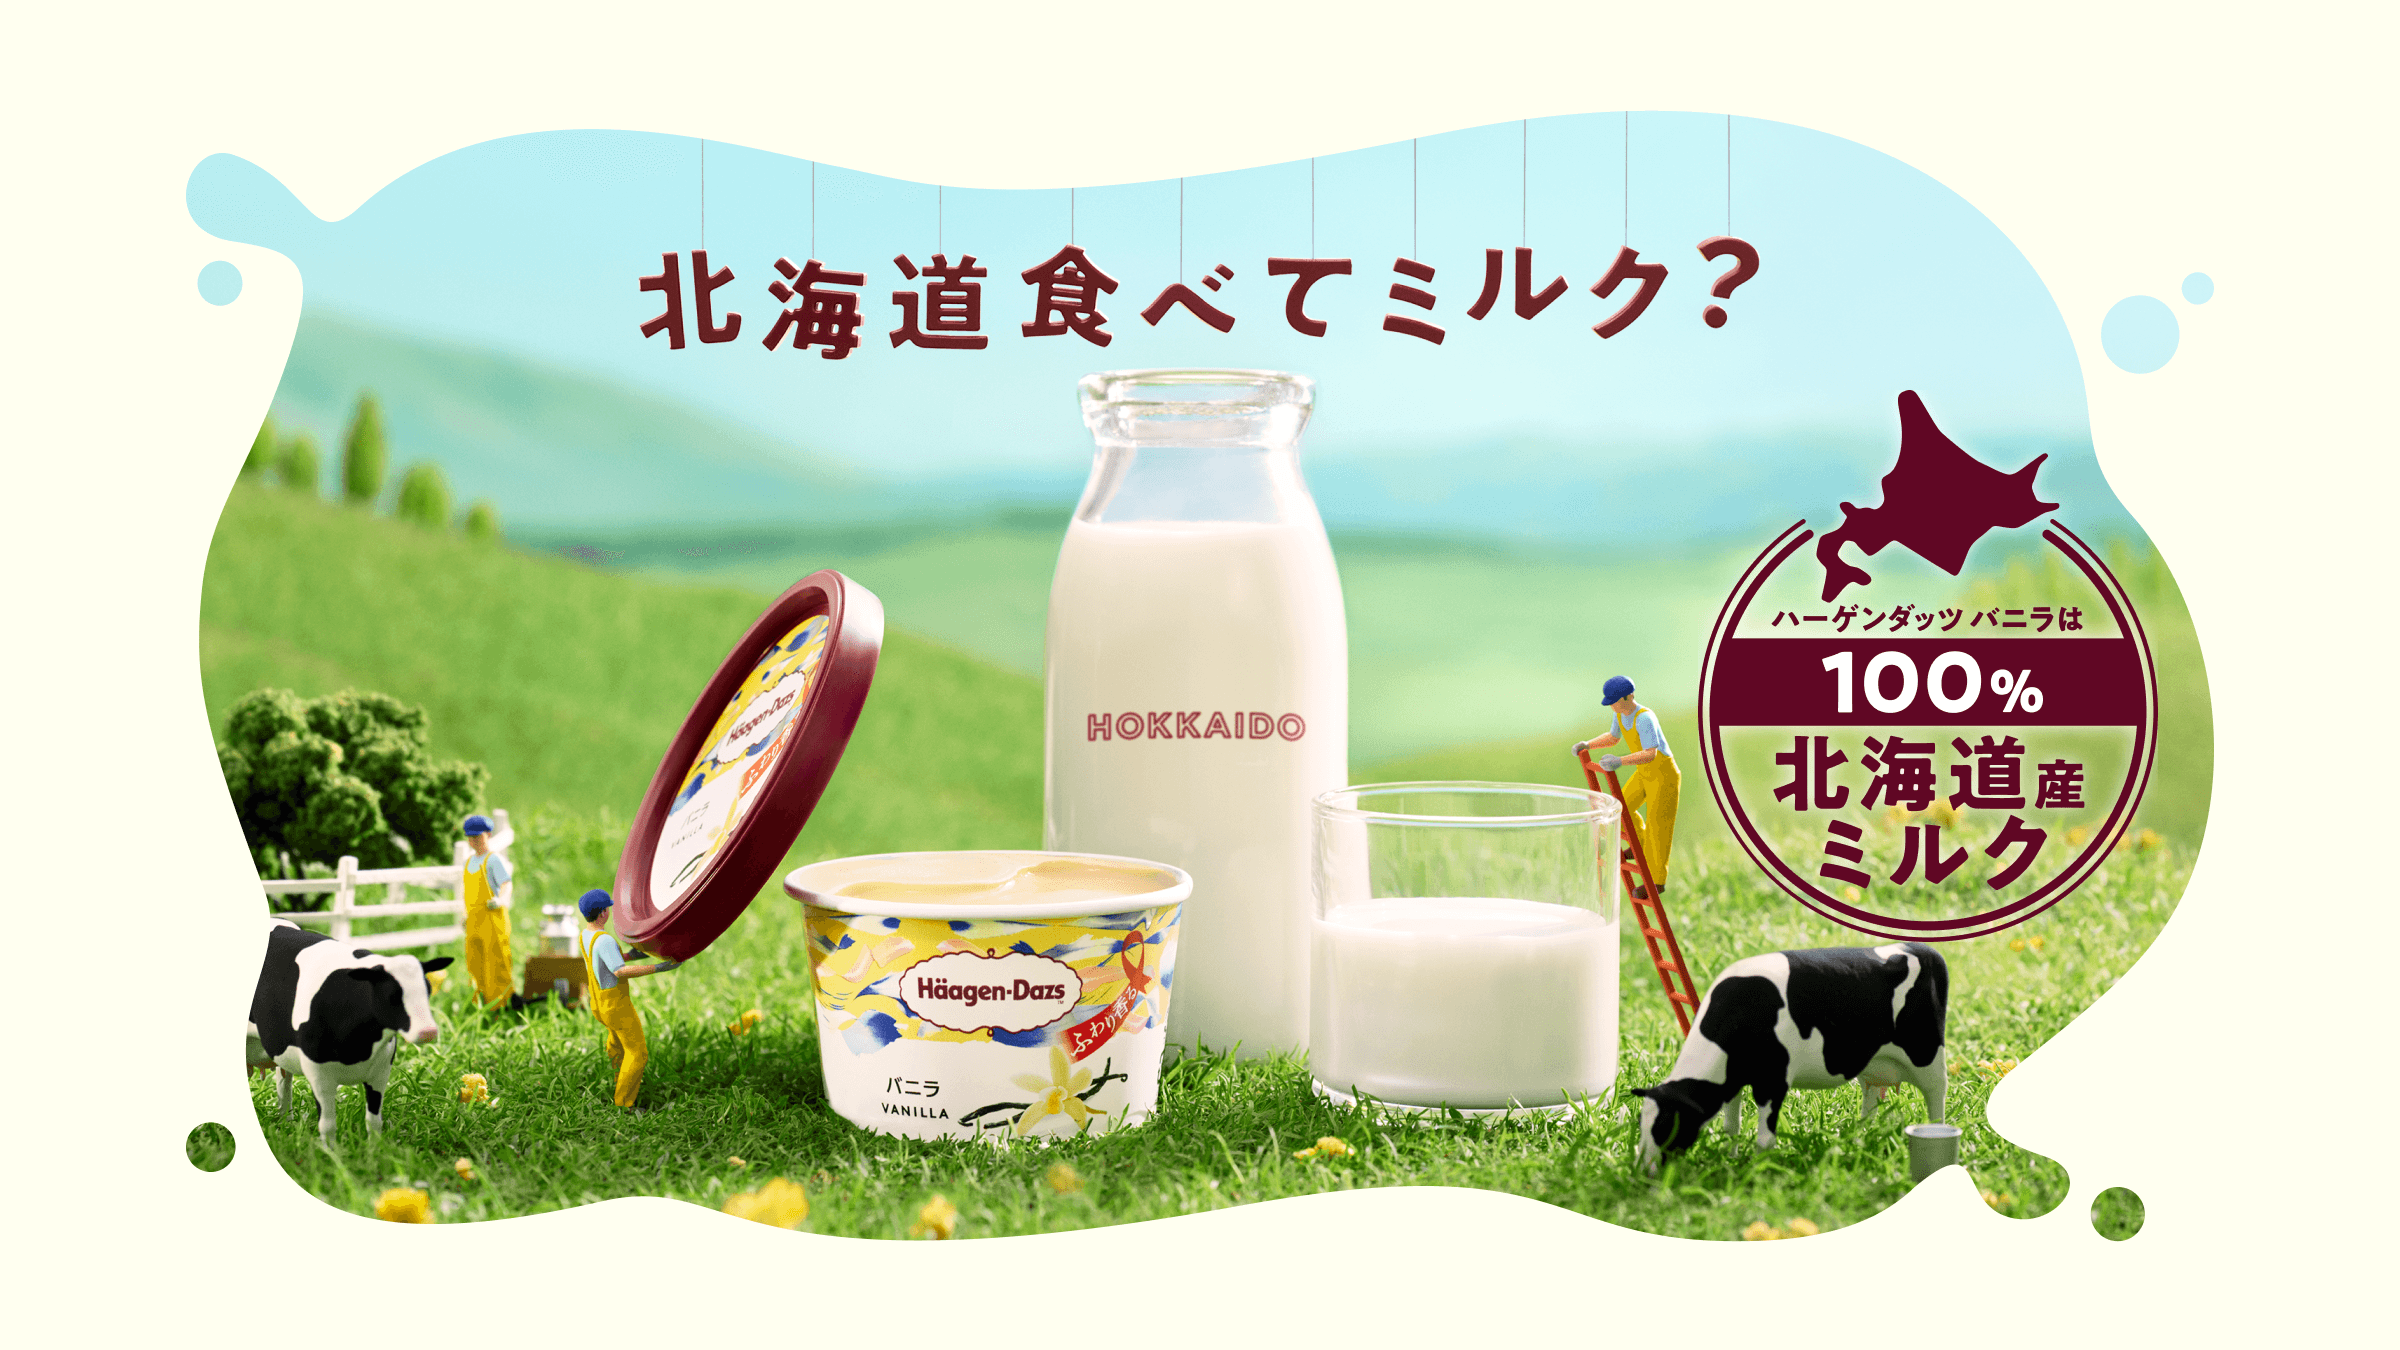 ハーゲンダッツ ジャパン株式会社 ハーゲンダッツ 北海道食べてミルク？